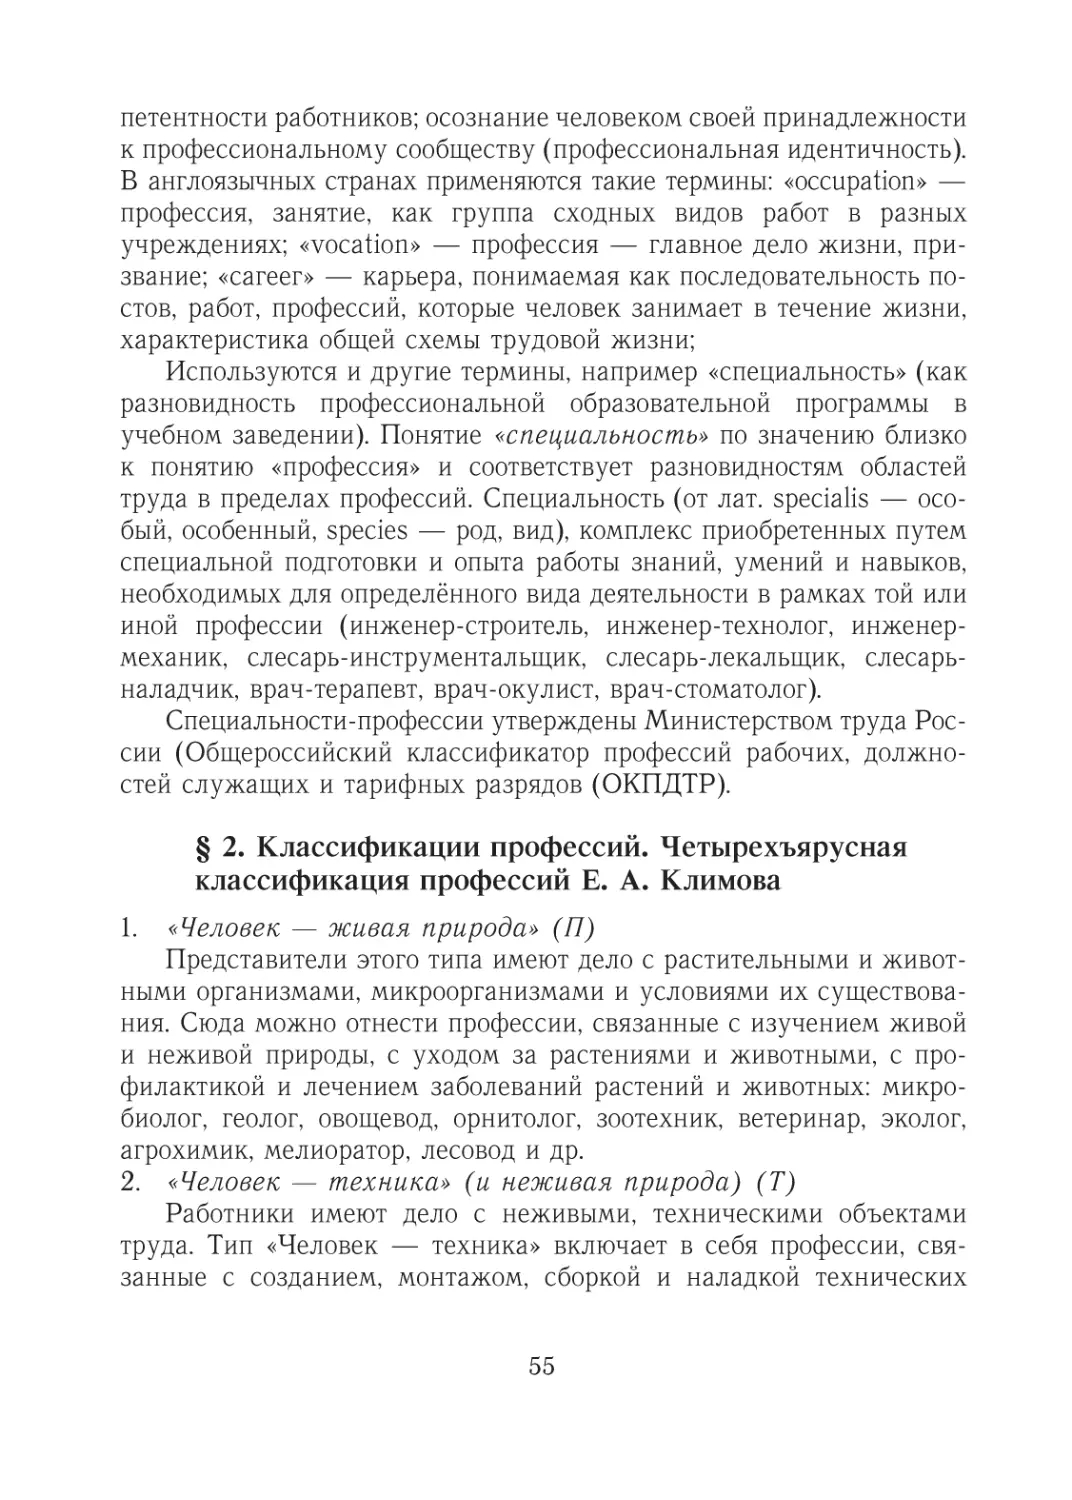 § 2. Классификации профессий. Четырехъярусная классификация профессий Е. А. Климова